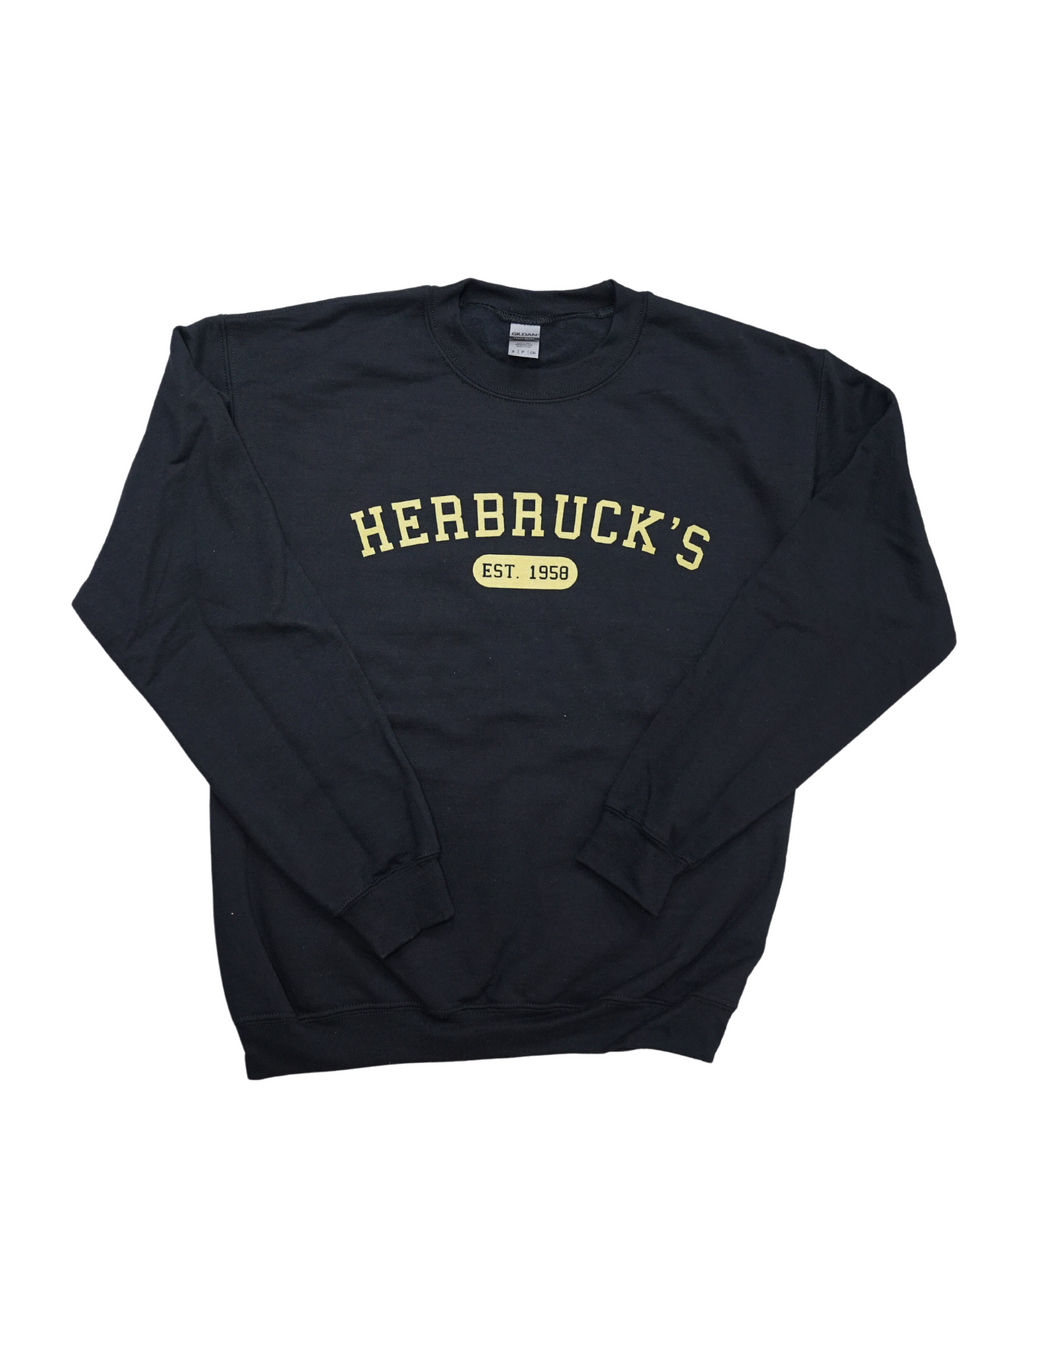 Black Herbruck's Crewneck